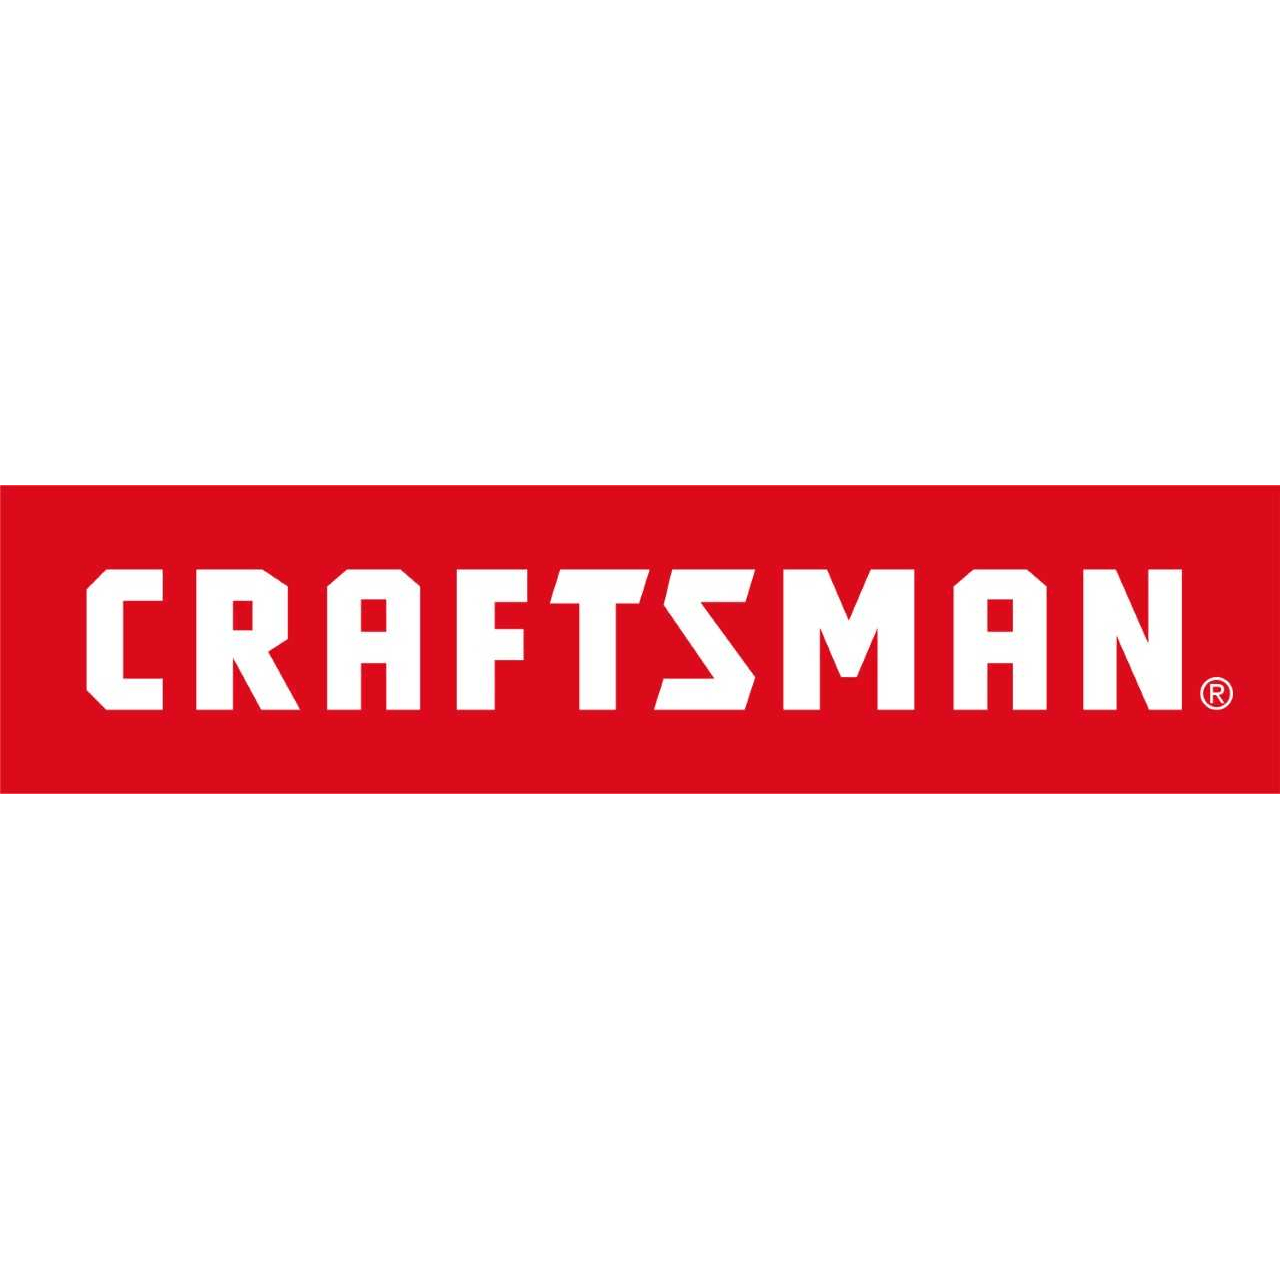 Craftsman Logo - Craftsman 826383 1 Shield Intake